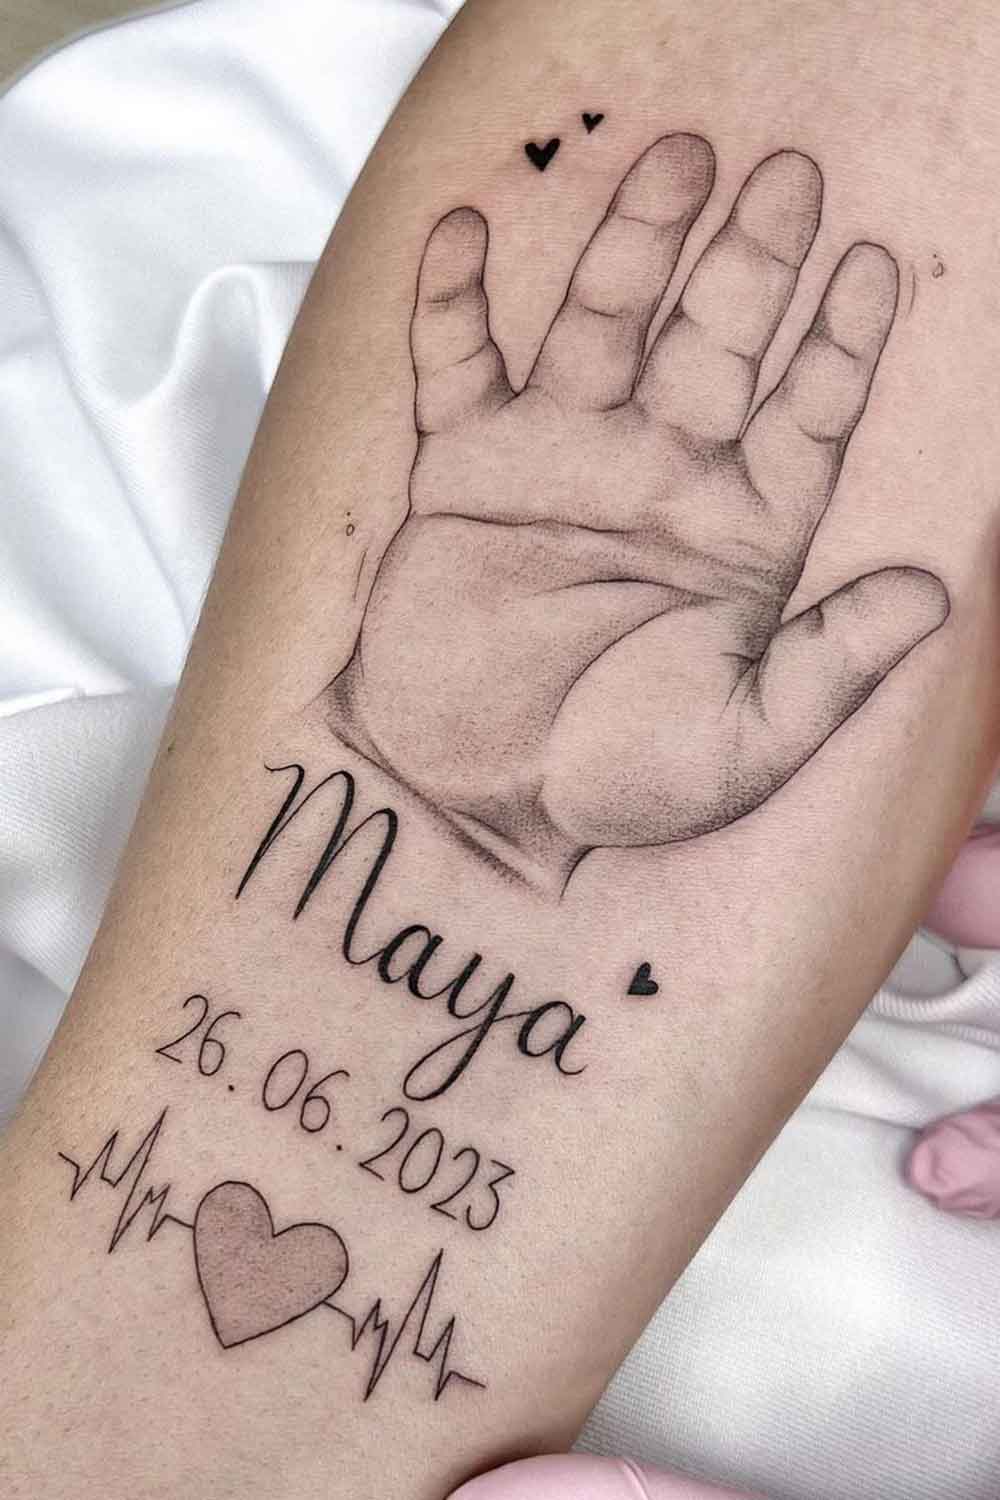 tatuagem-em-homenagem-a-filha-data-nome-batimento-cardiaco-e-mao 